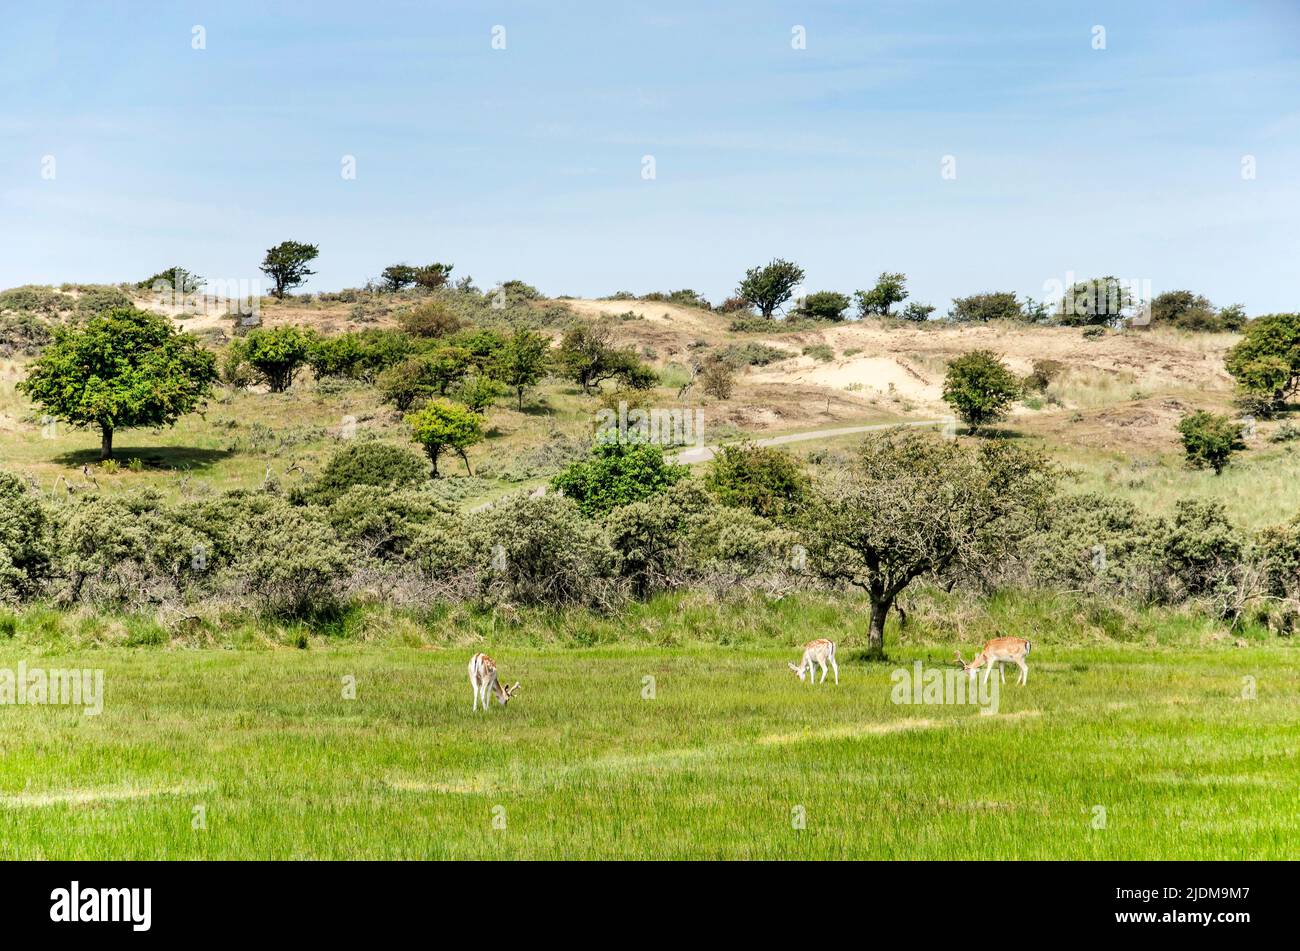 Trois cerfs paissent dans un paysage de collines et de plaines, dans les dunes entre Zandvoort et Noordwijk aux pays-Bas Banque D'Images